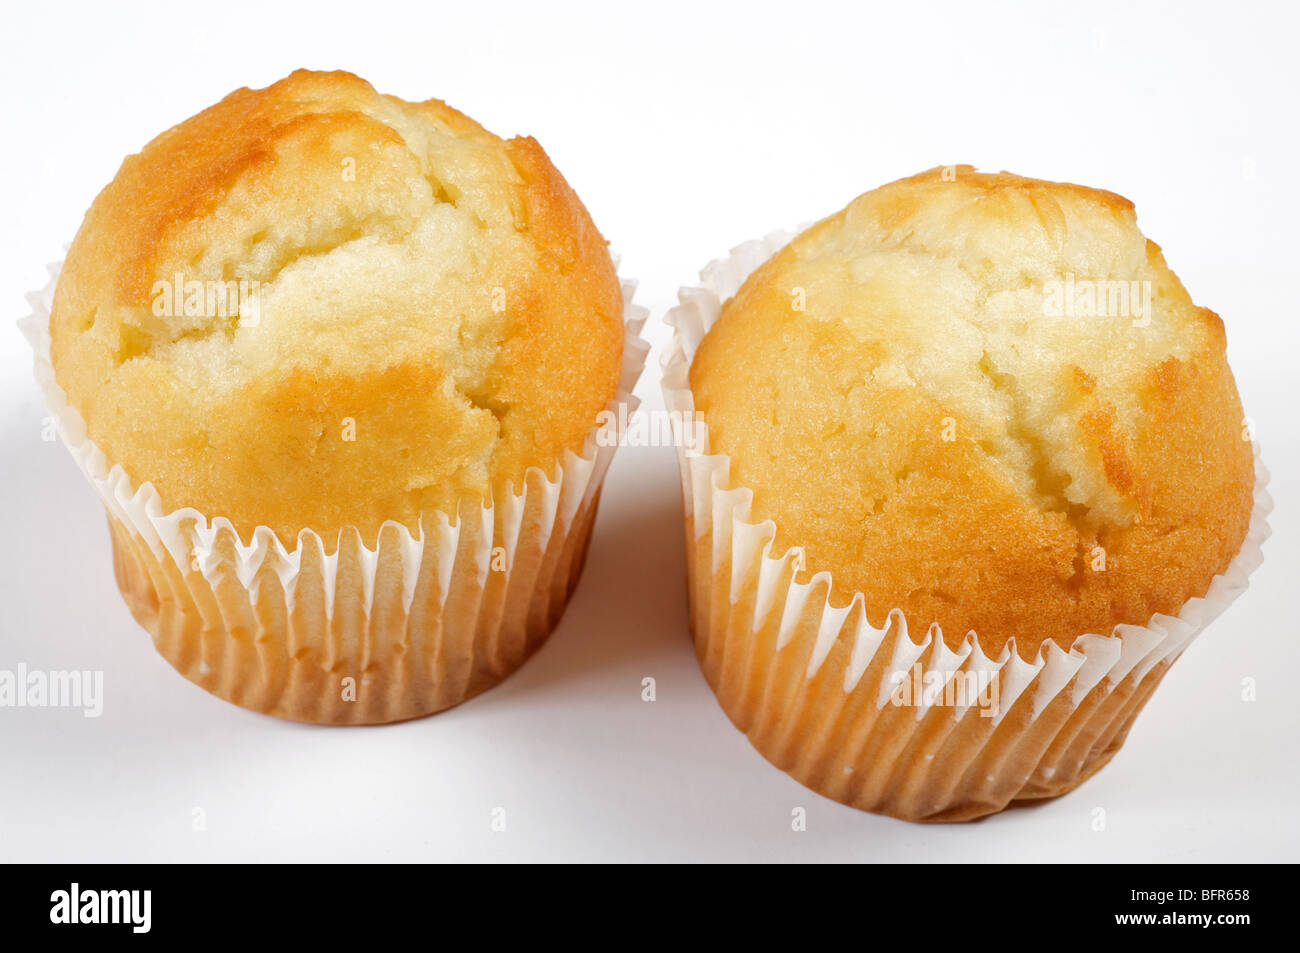 Lemon cupcakes Stock Photo